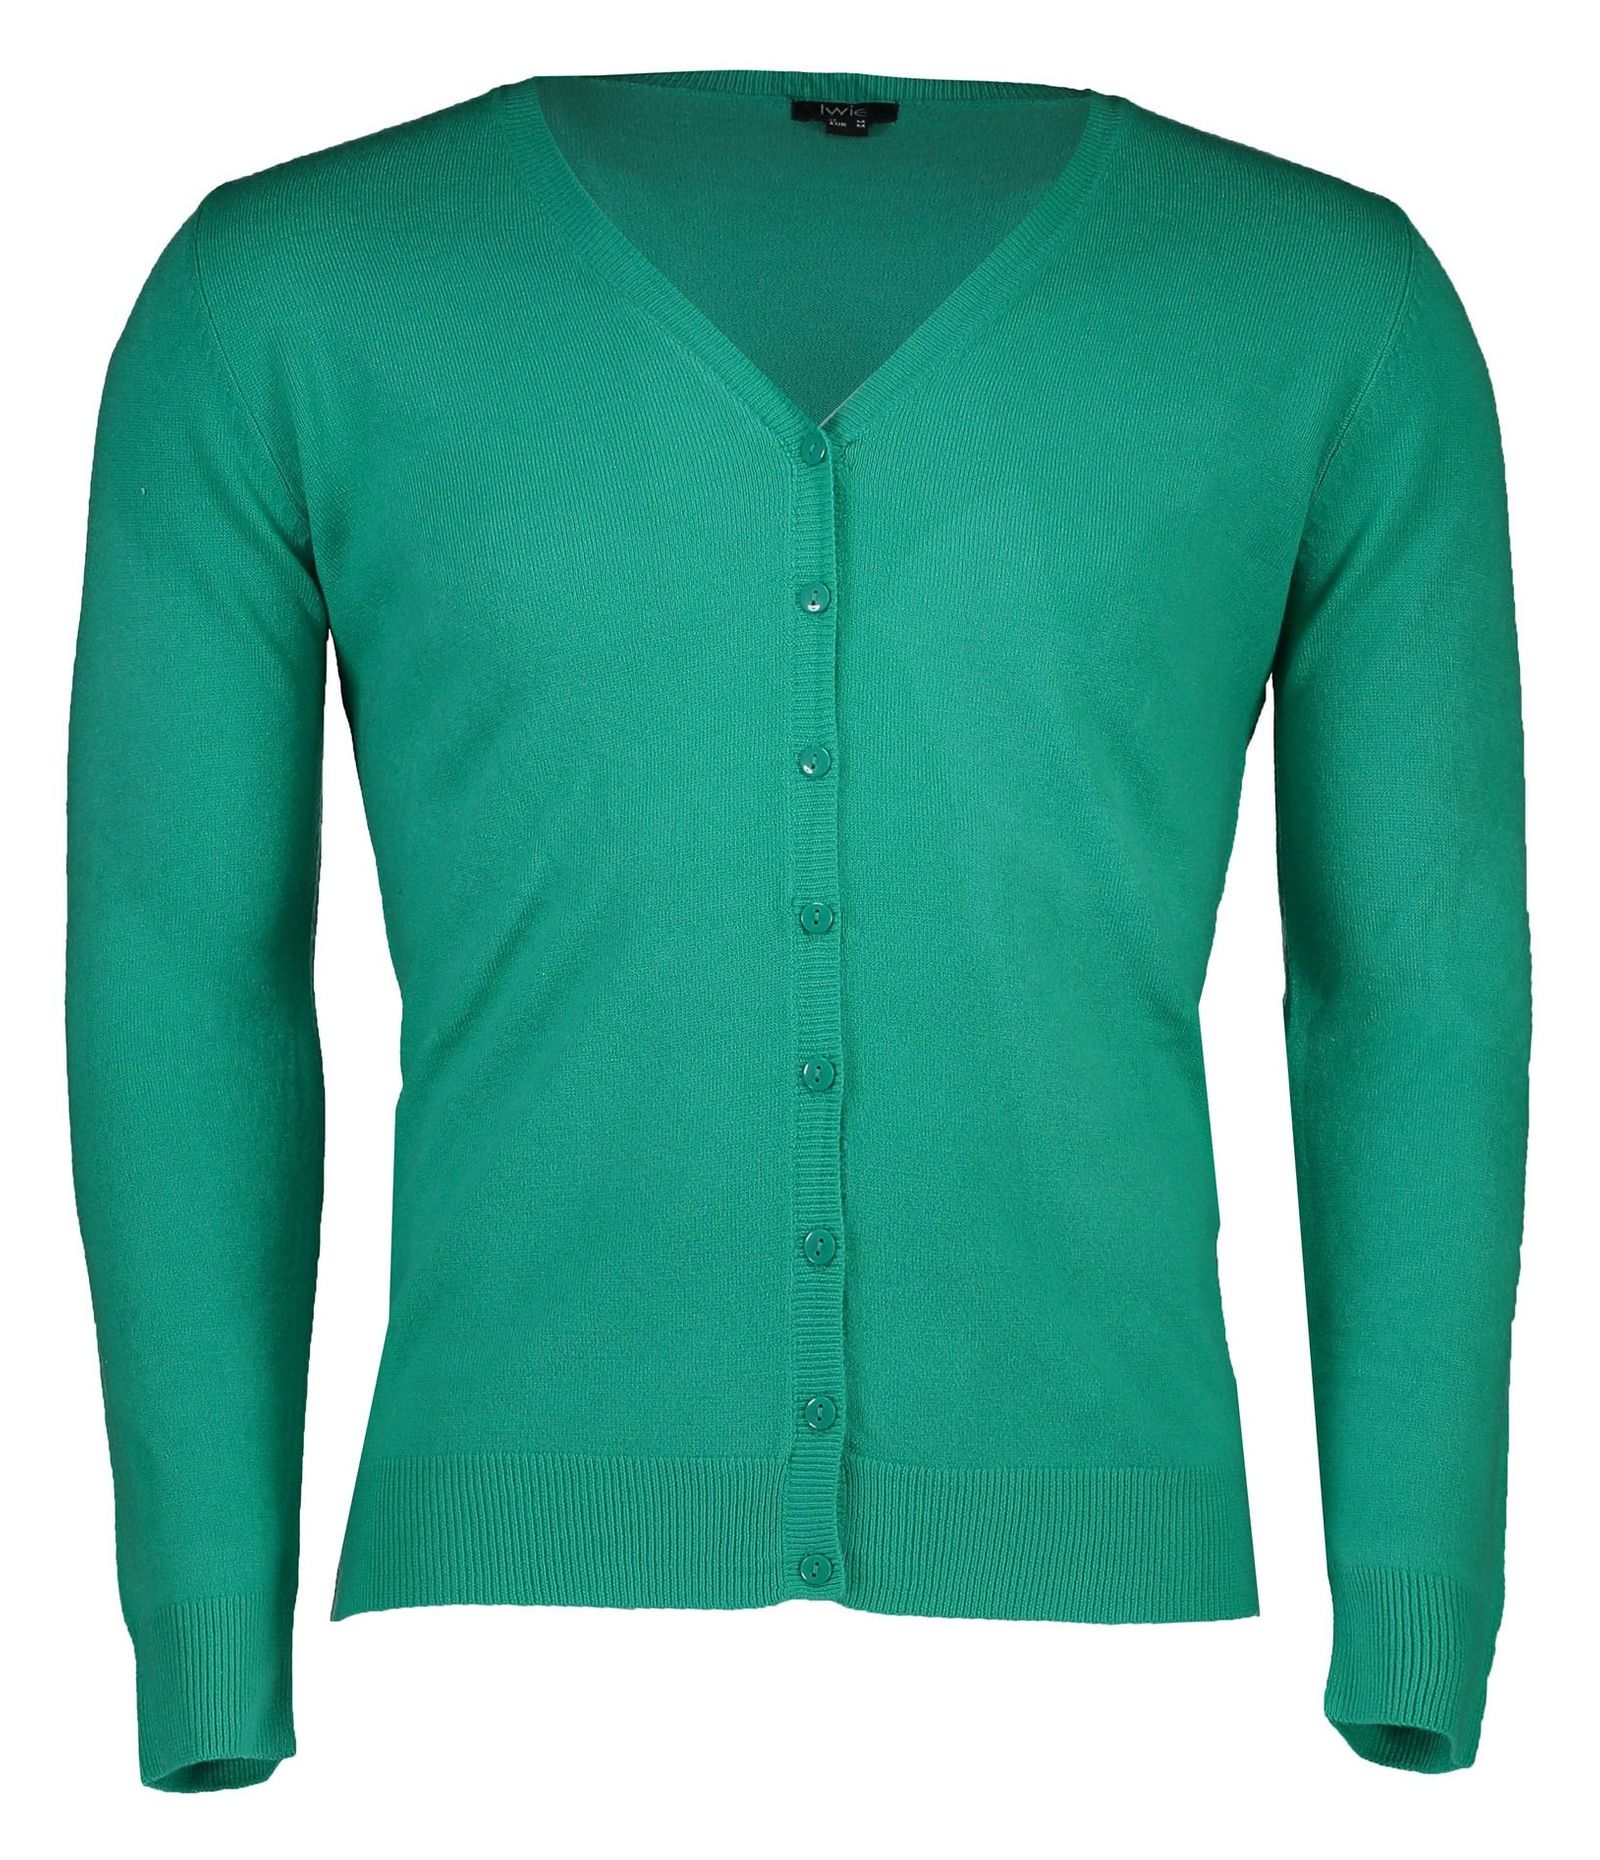 ژاکت دکمه دار زنانه - یوپیم - سبز آبي - 2